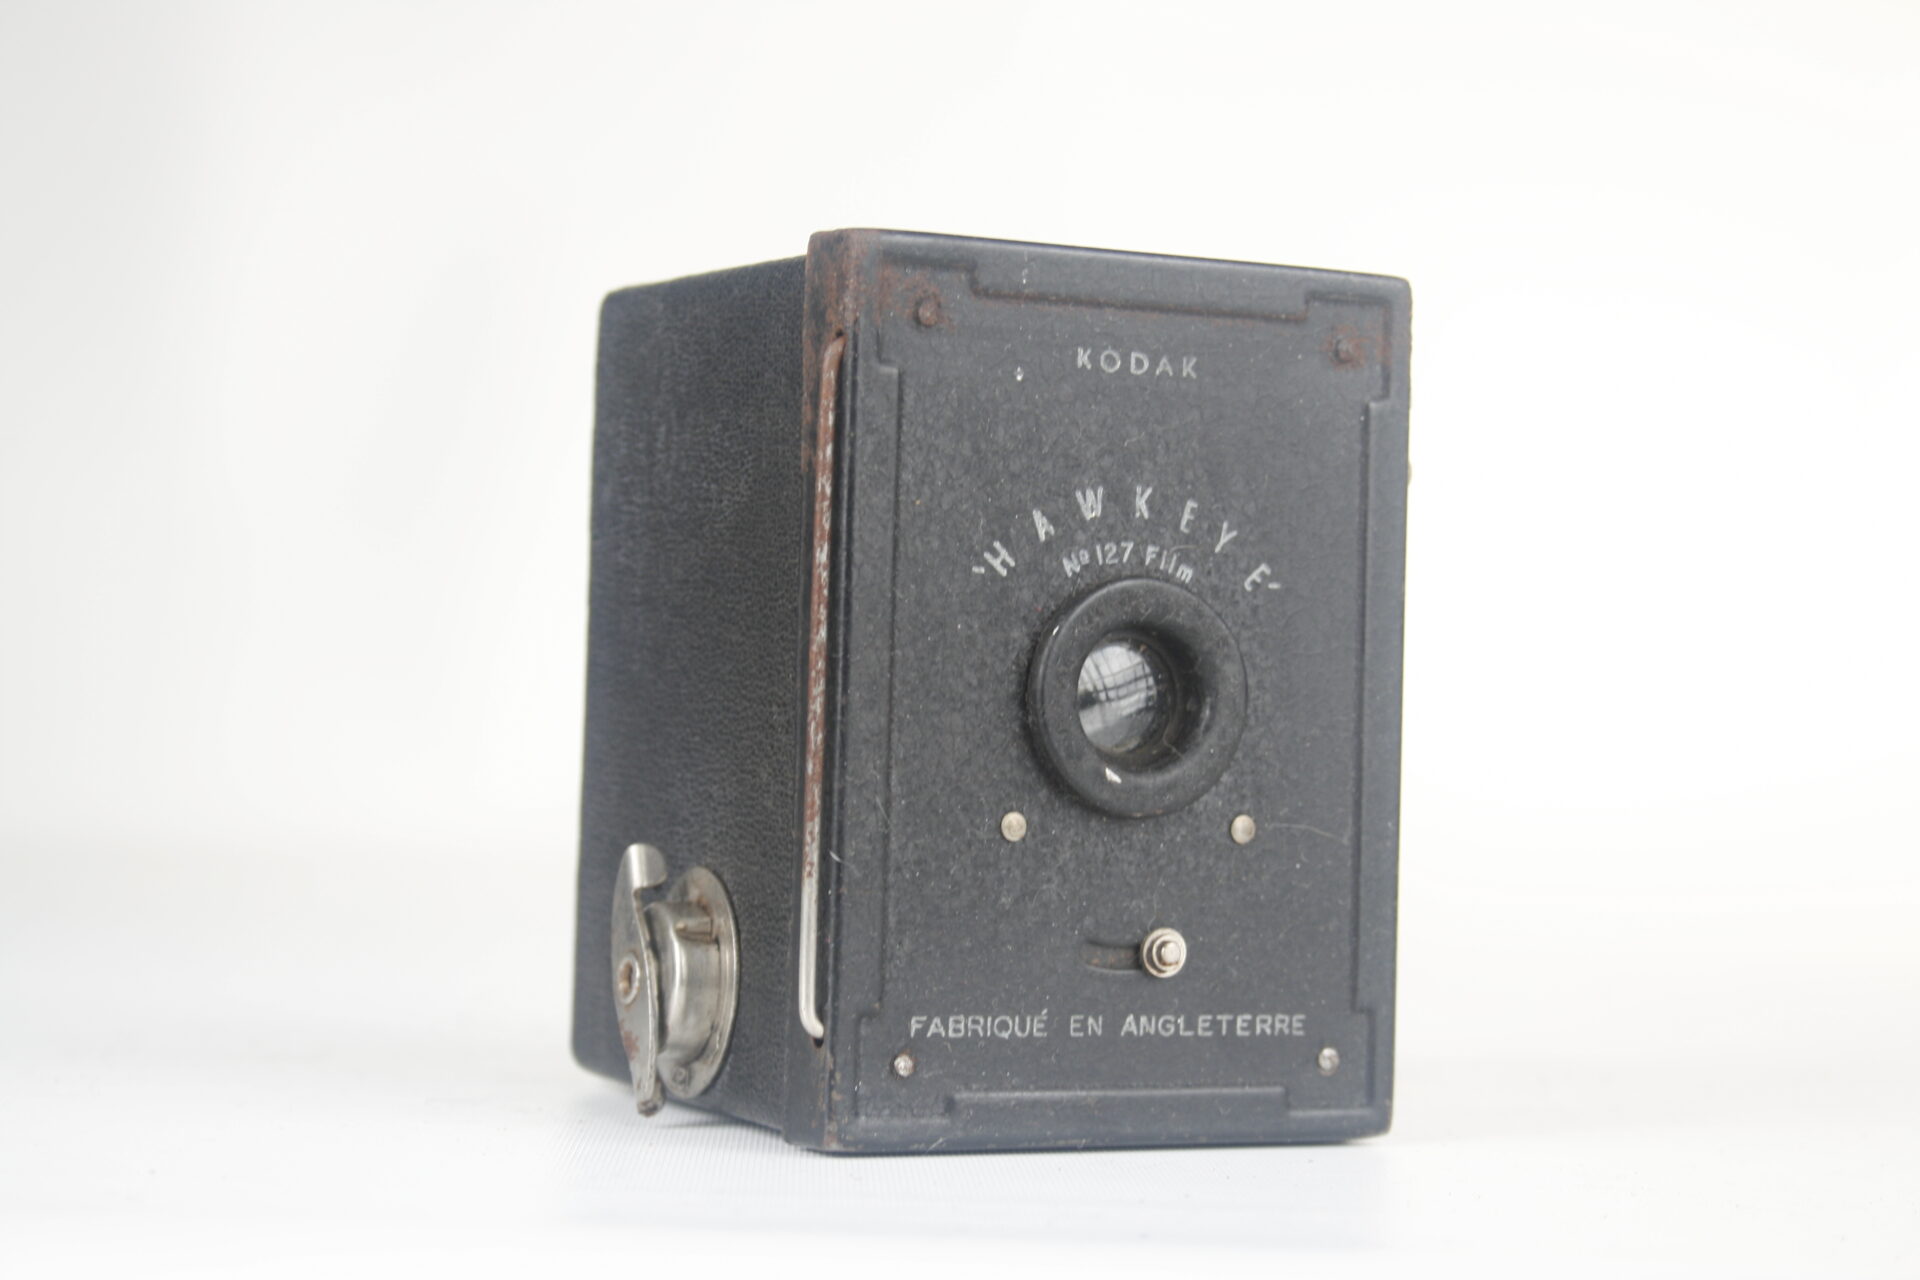 Kodak Hawkeye. 127 film box camera. 1936. Engeland.